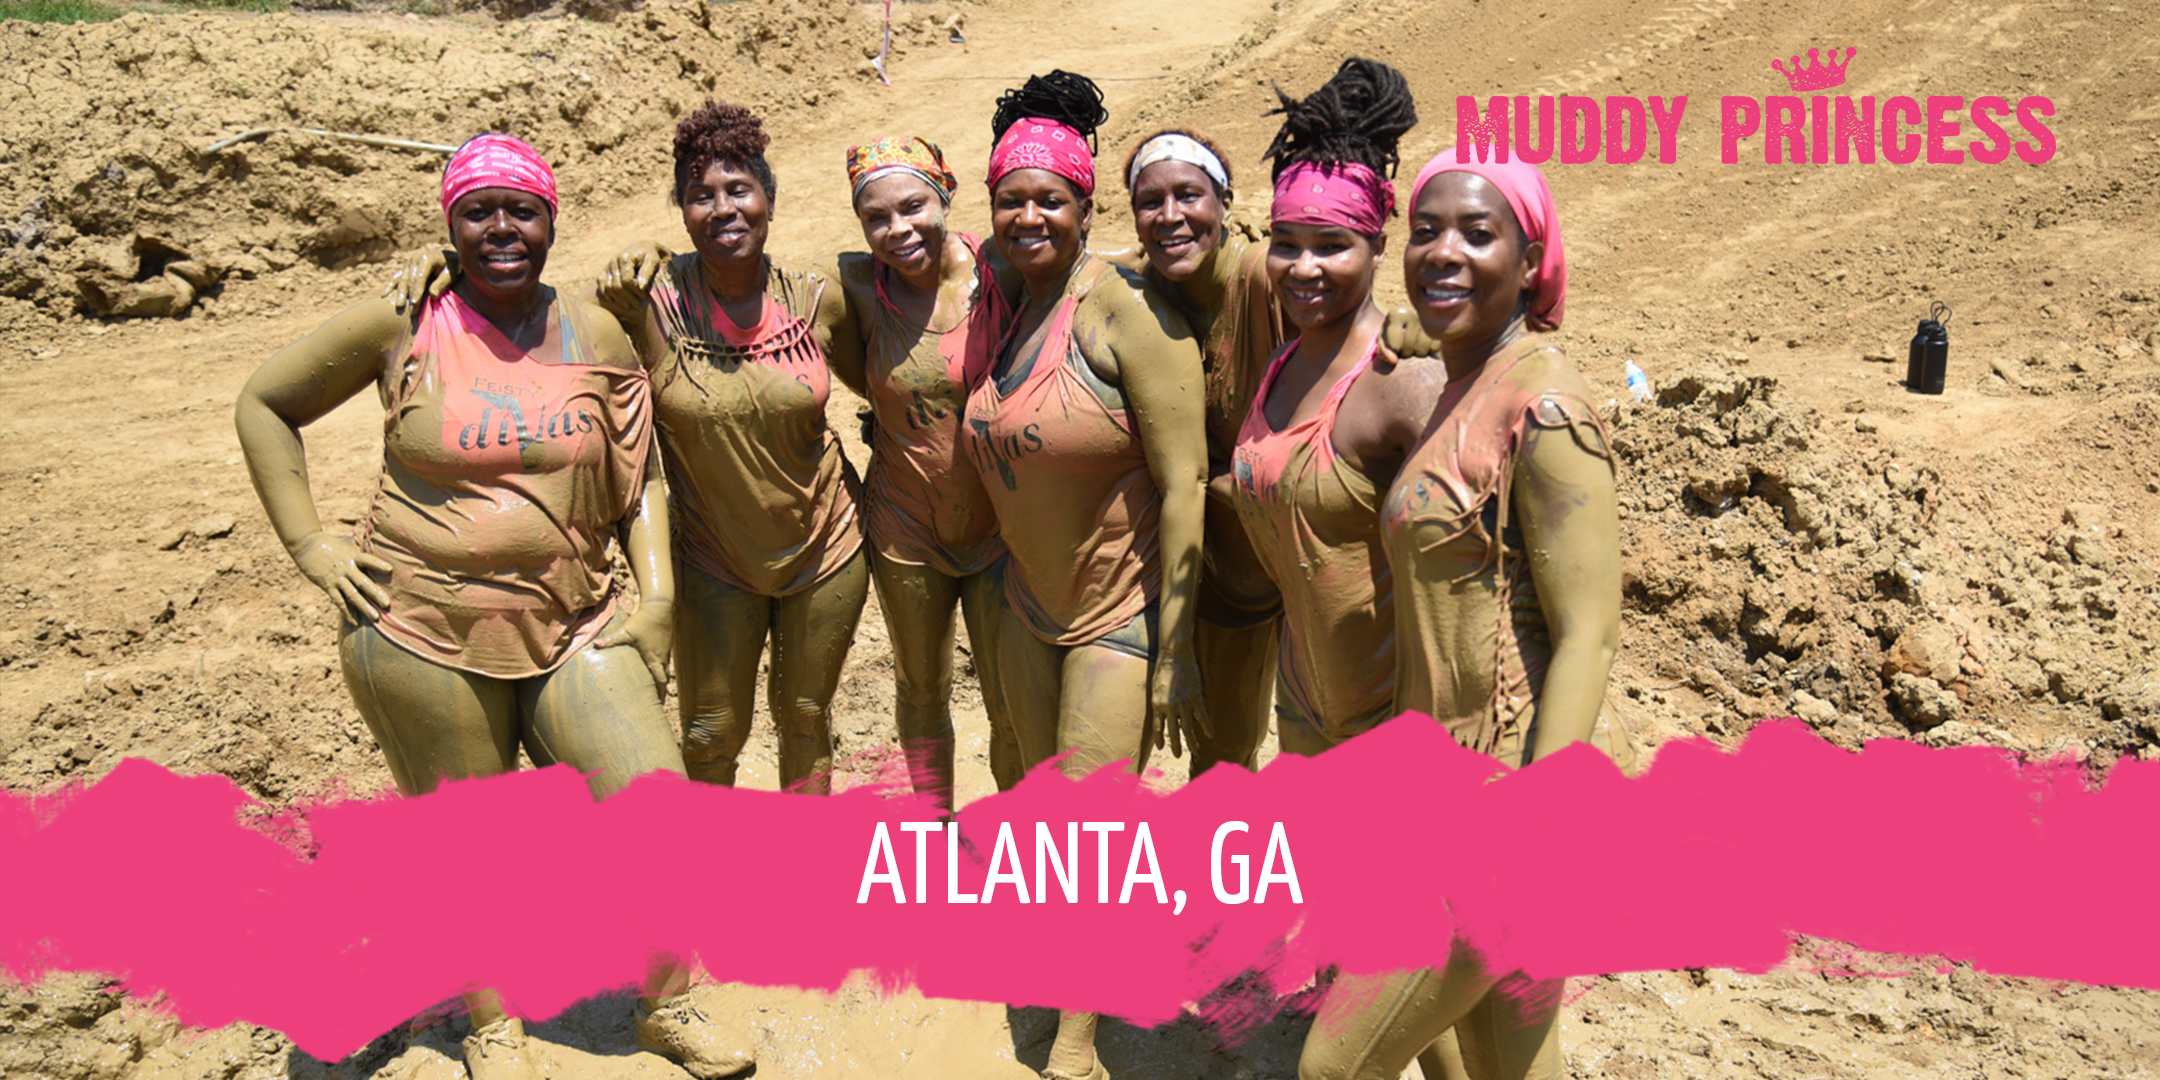 Muddy Princess Mud Run Coming To Metro Atlanta